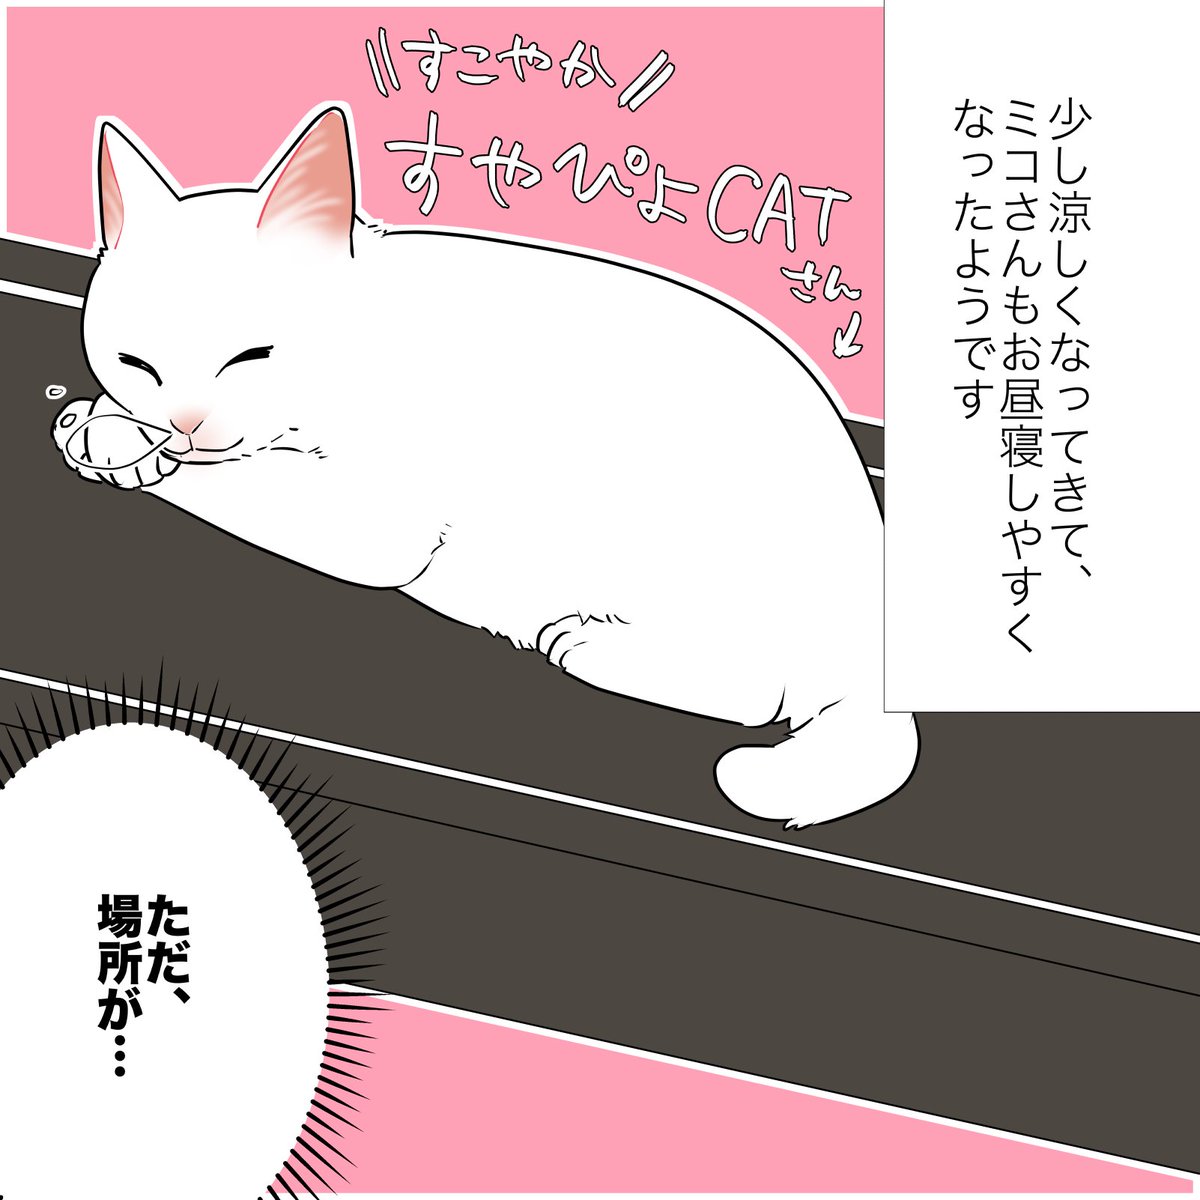 猫のせいで太った話(1/2)
#漫画が読めるハッシュタグ 
#愛されたがりの白猫ミコさん 